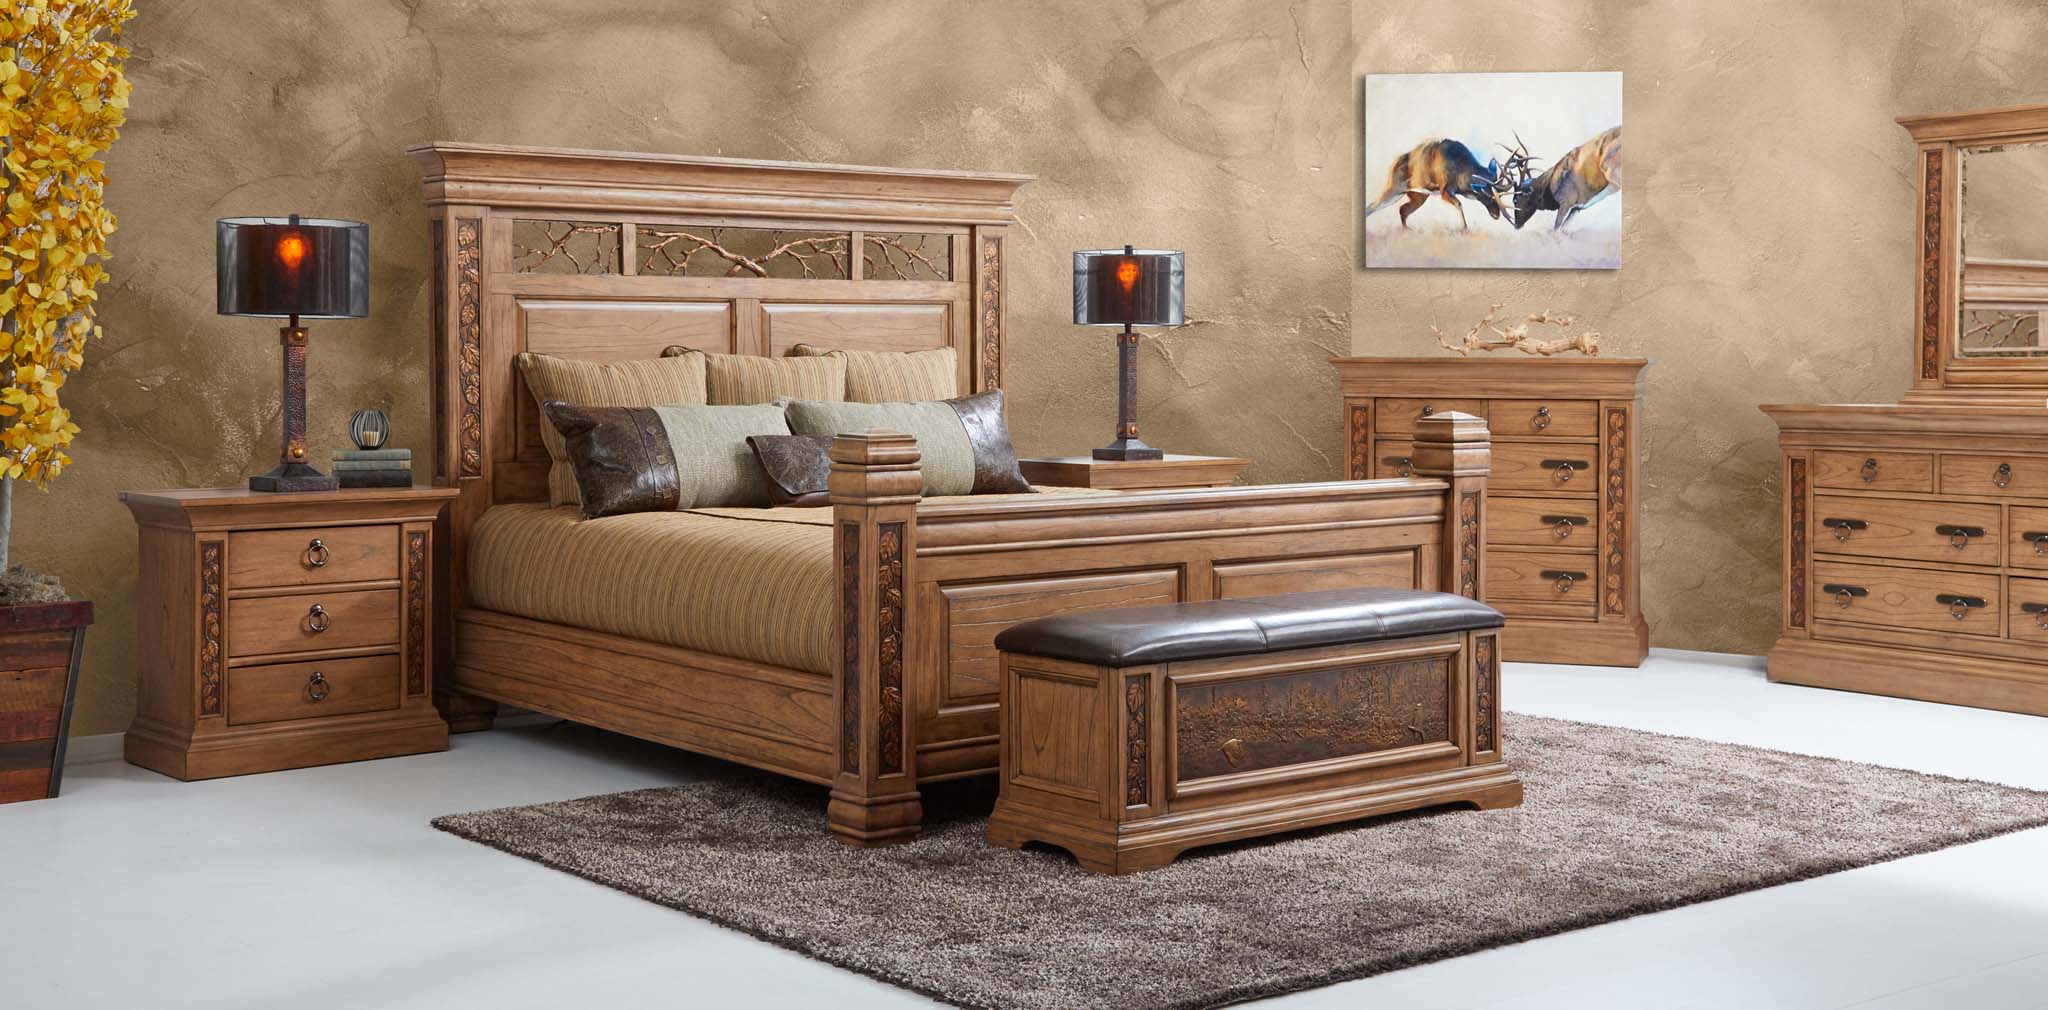 Bedroom Dick Idol Furniture For Woodbrook Designs